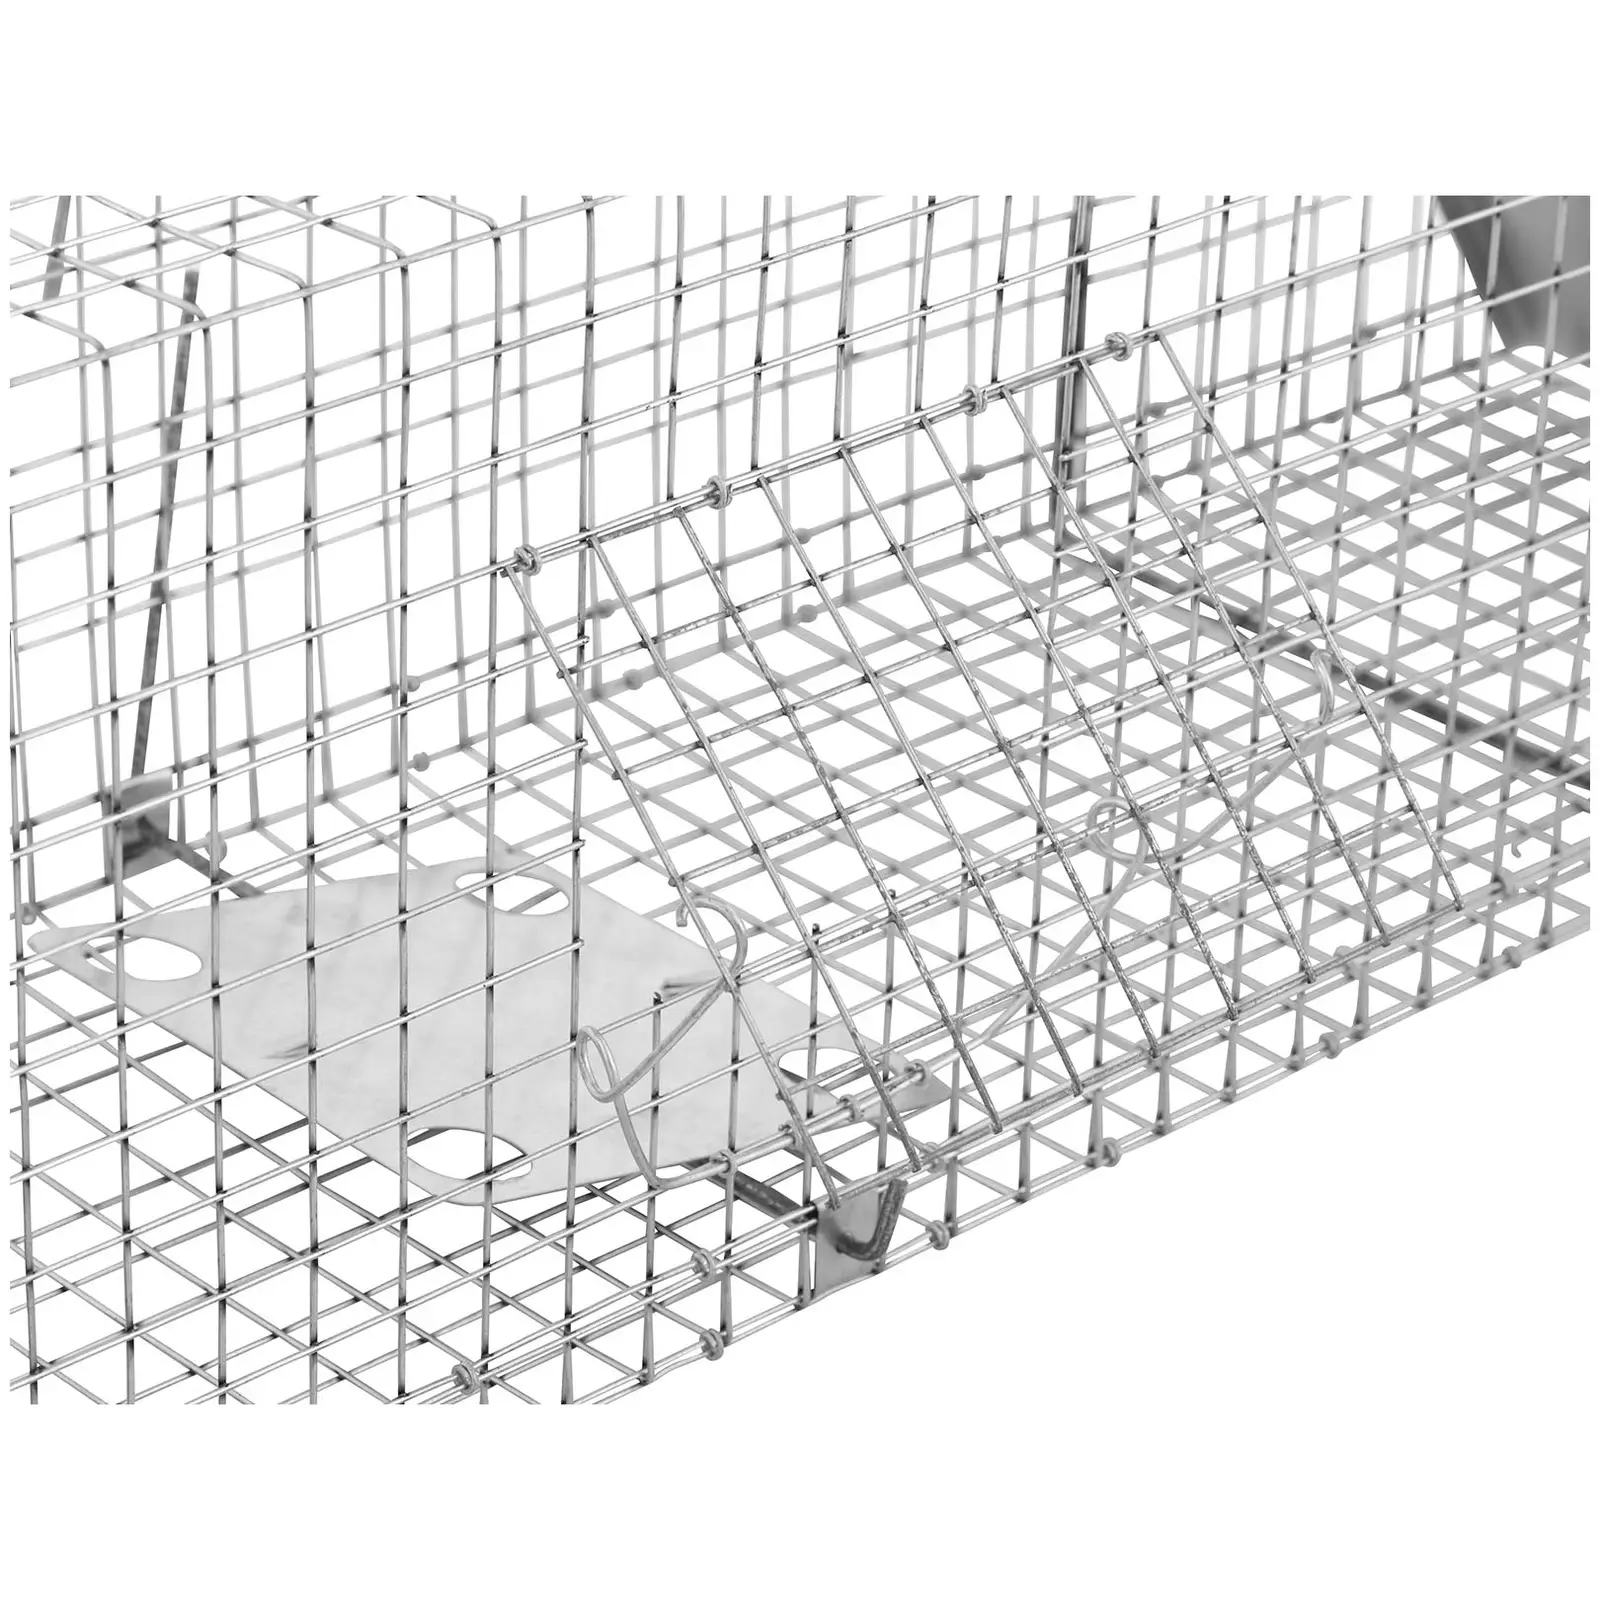 Trappola per animali - 122 x 29 x 32.5 cm - Dimensioni delle maglie: 25 x 25 mm